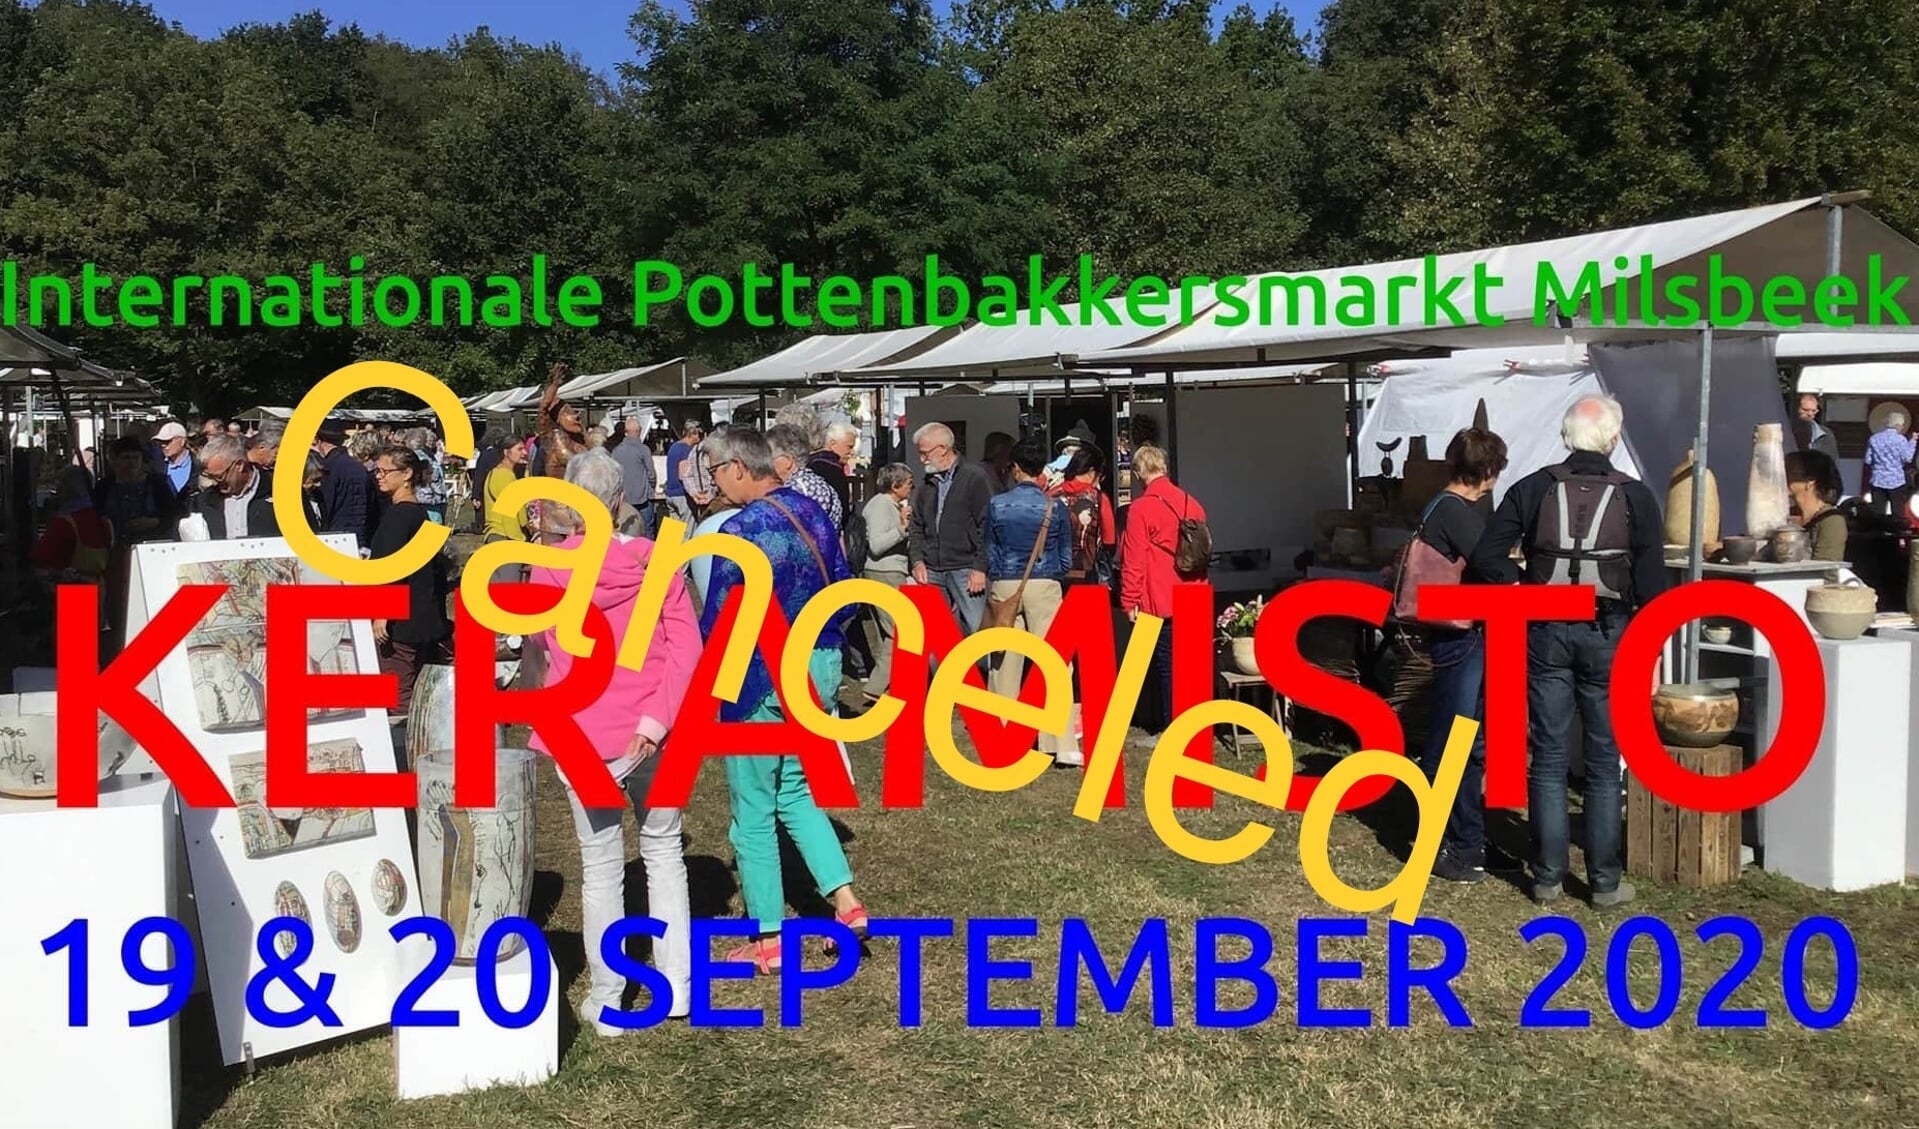 Internationale pottenbakkersmarkt in Milsbeek gaat dit jaar niet door